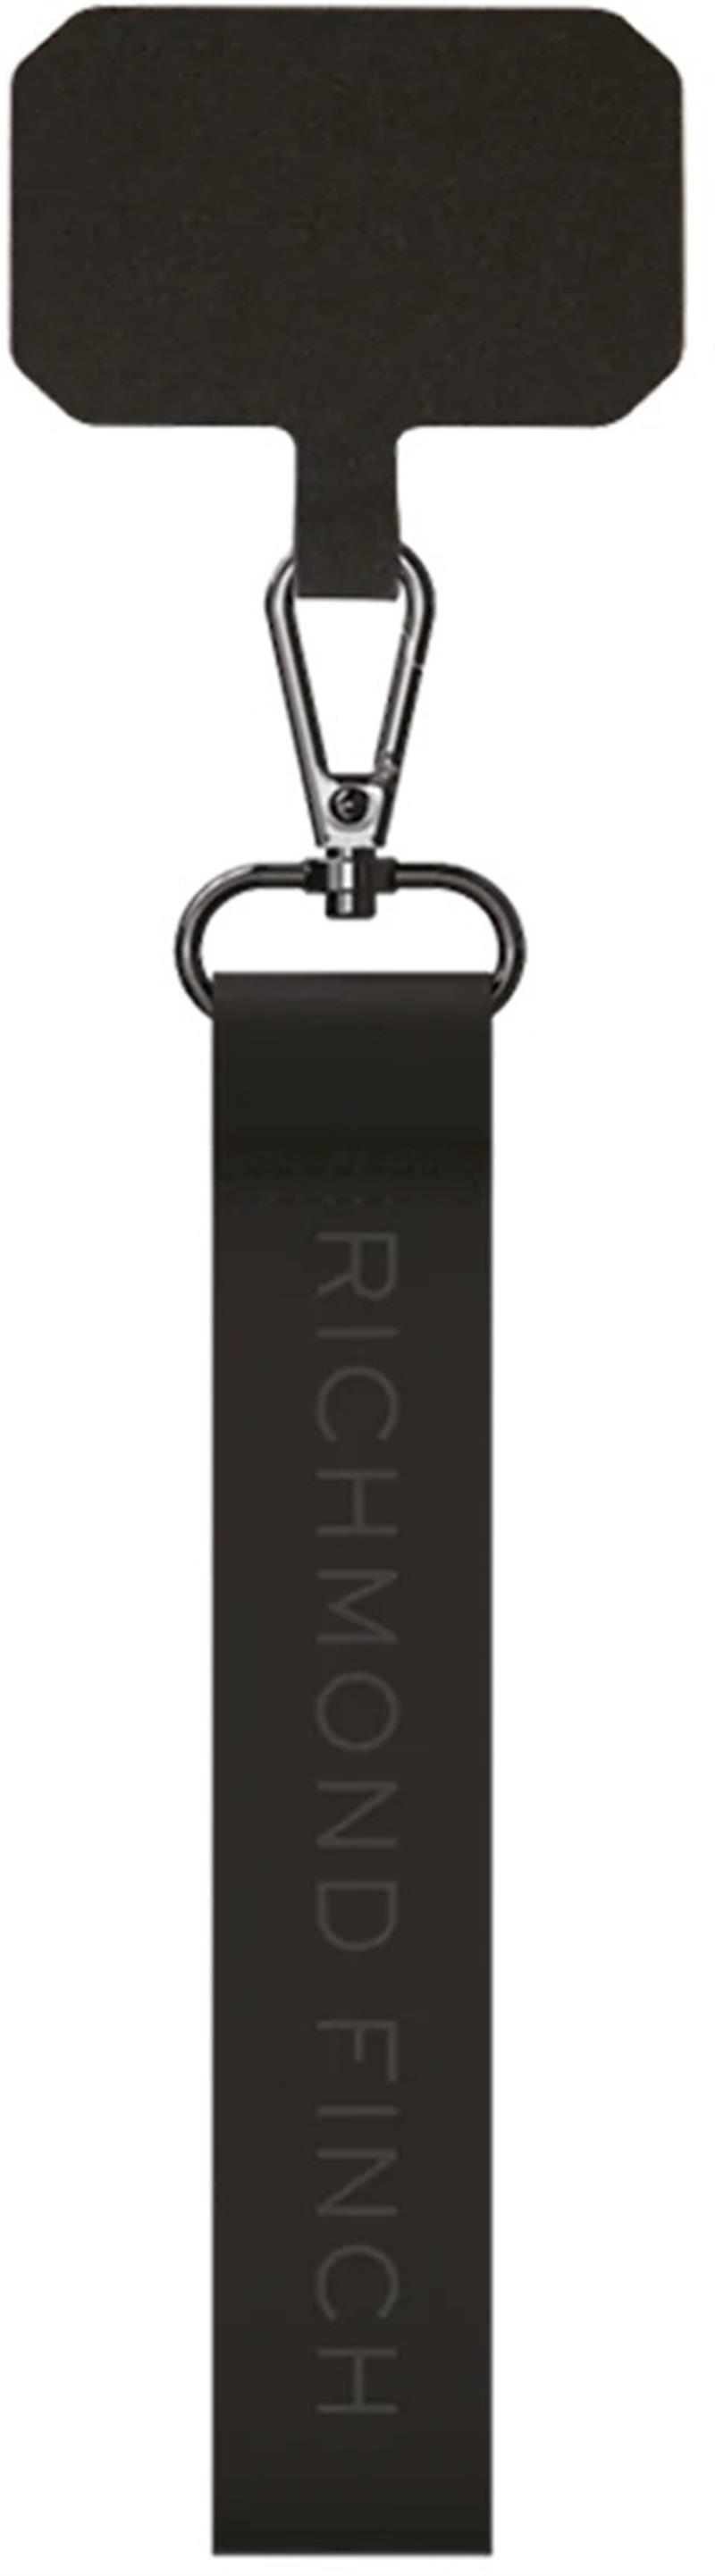 Richmond Finch Universal Wrist Strap Black